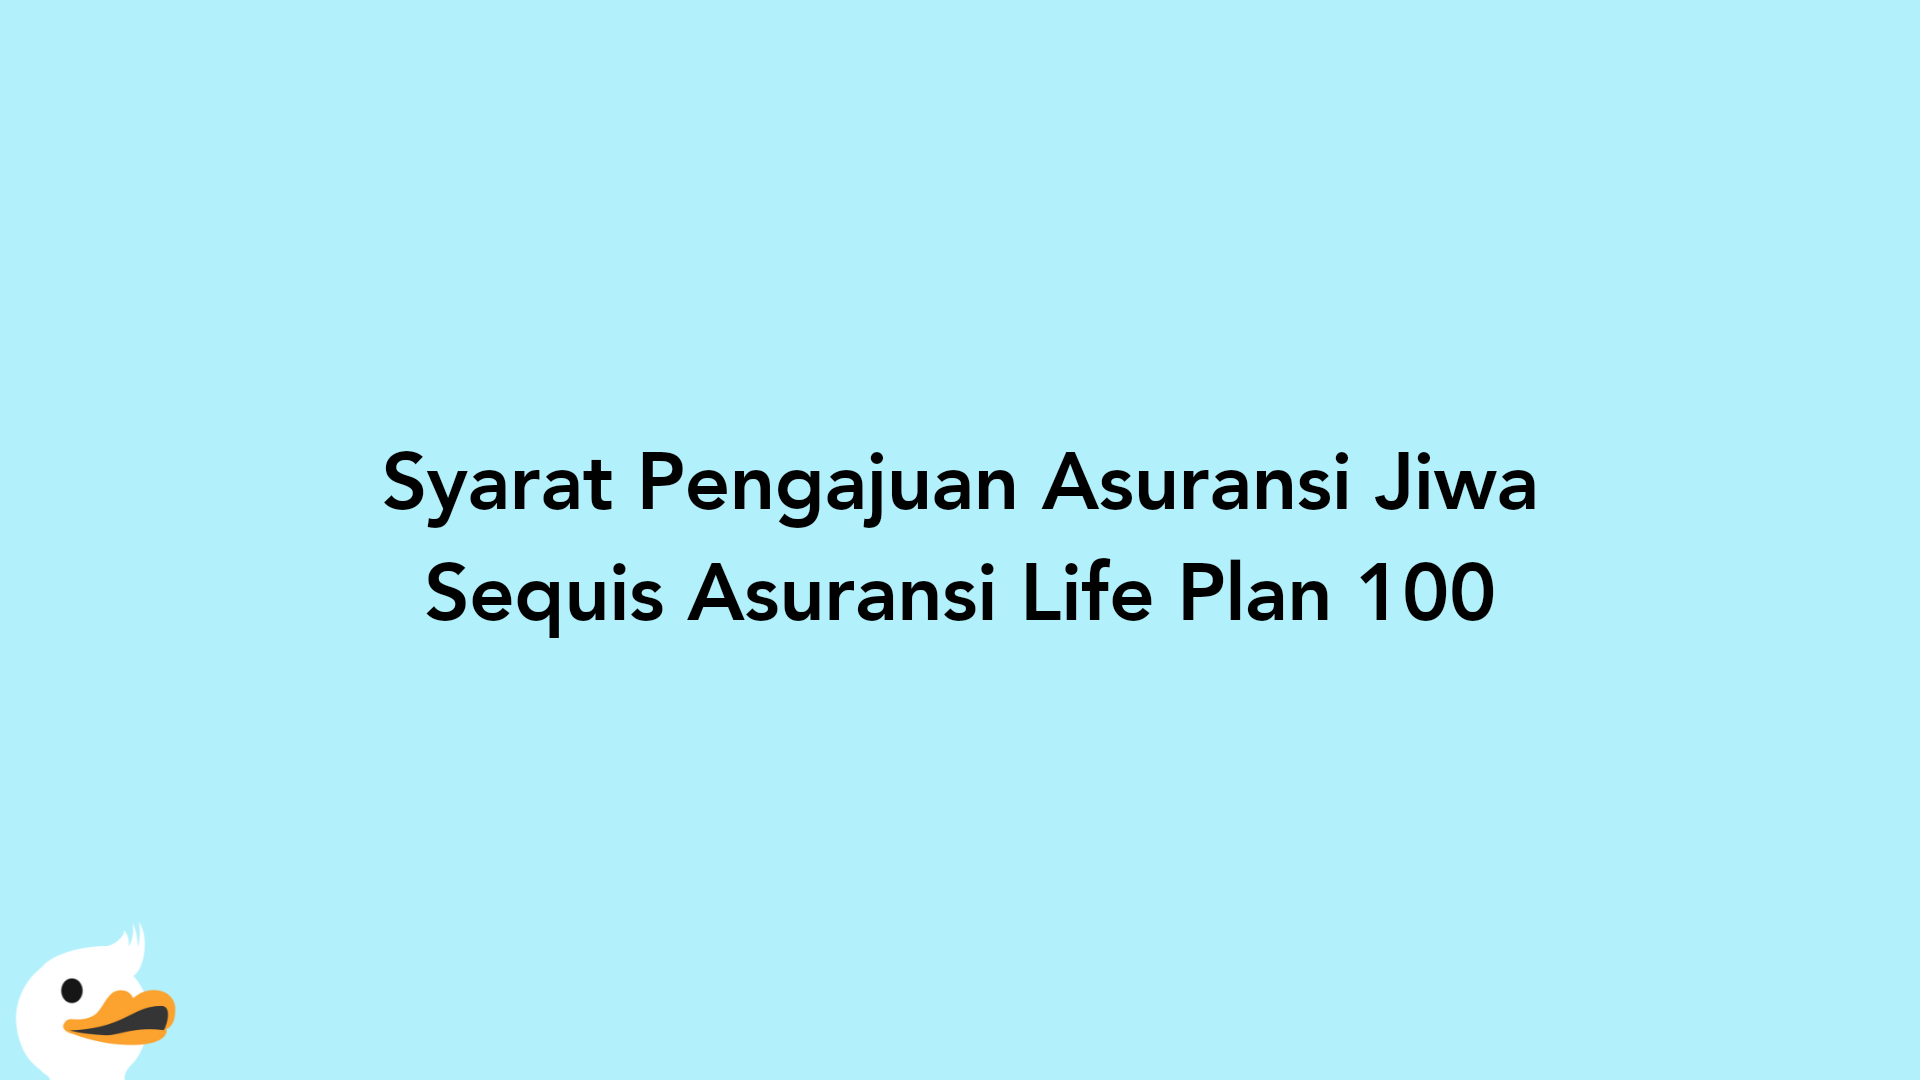 Syarat Pengajuan Asuransi Jiwa Sequis Asuransi Life Plan 100